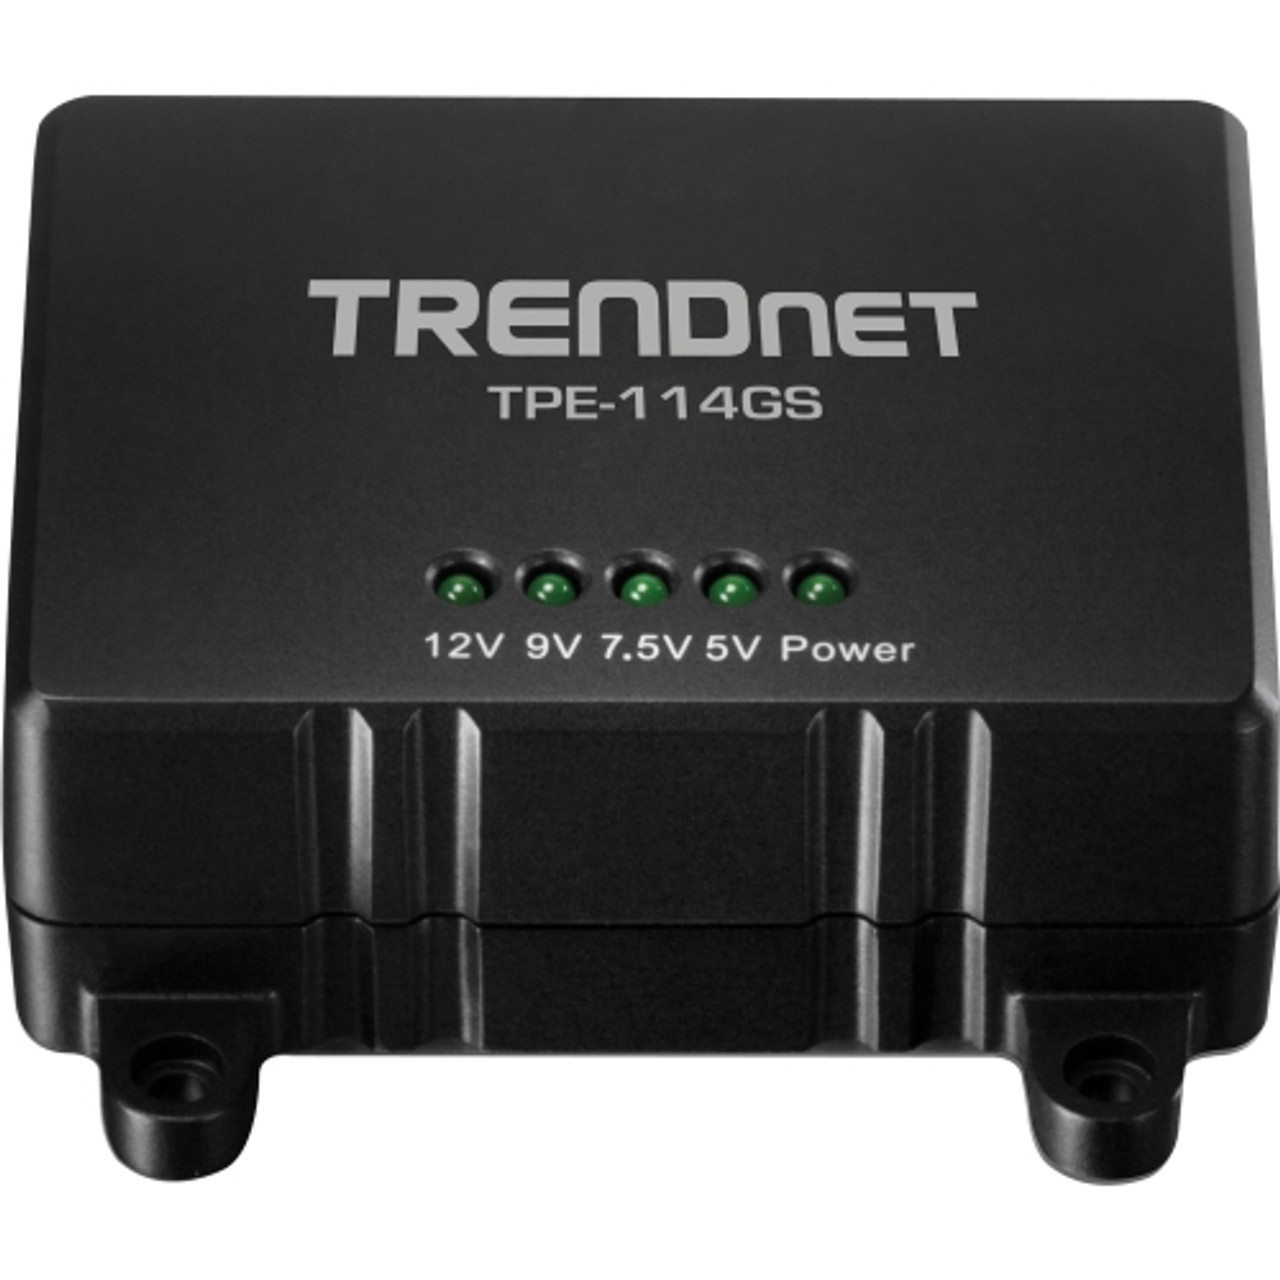 TPE-114GS TRENDnet TPE-114GS Gigabit Power over Ethernet (PoE) Splitter 5 V DC, 7.5 V DC, 9 V DC, 12 V DC Output